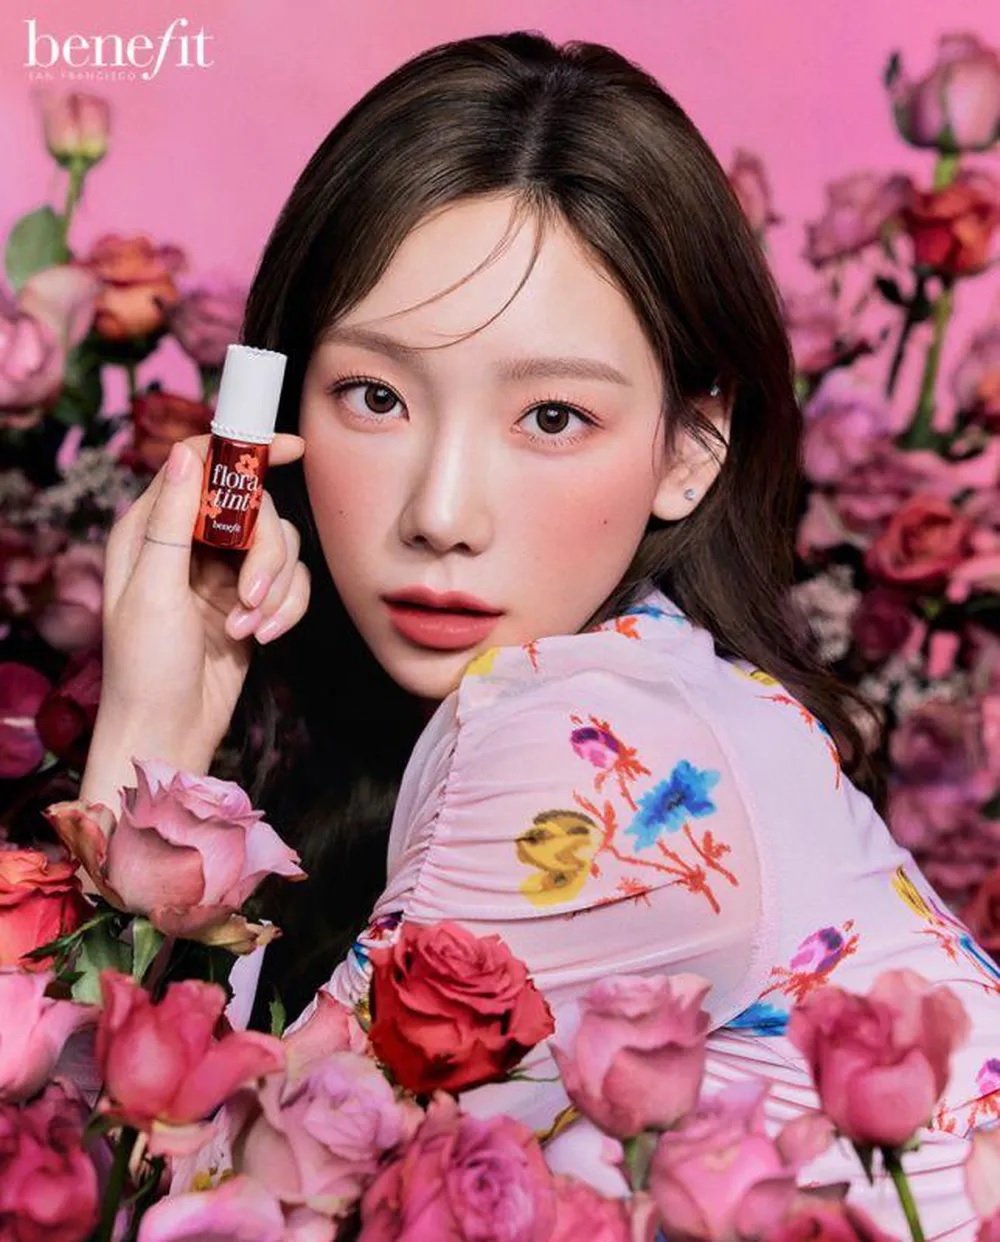 Sao Hàn hôm nay 20/4: Taeyeon (SNSD) hóa nàng thơ mới của Benefit Cosmetics